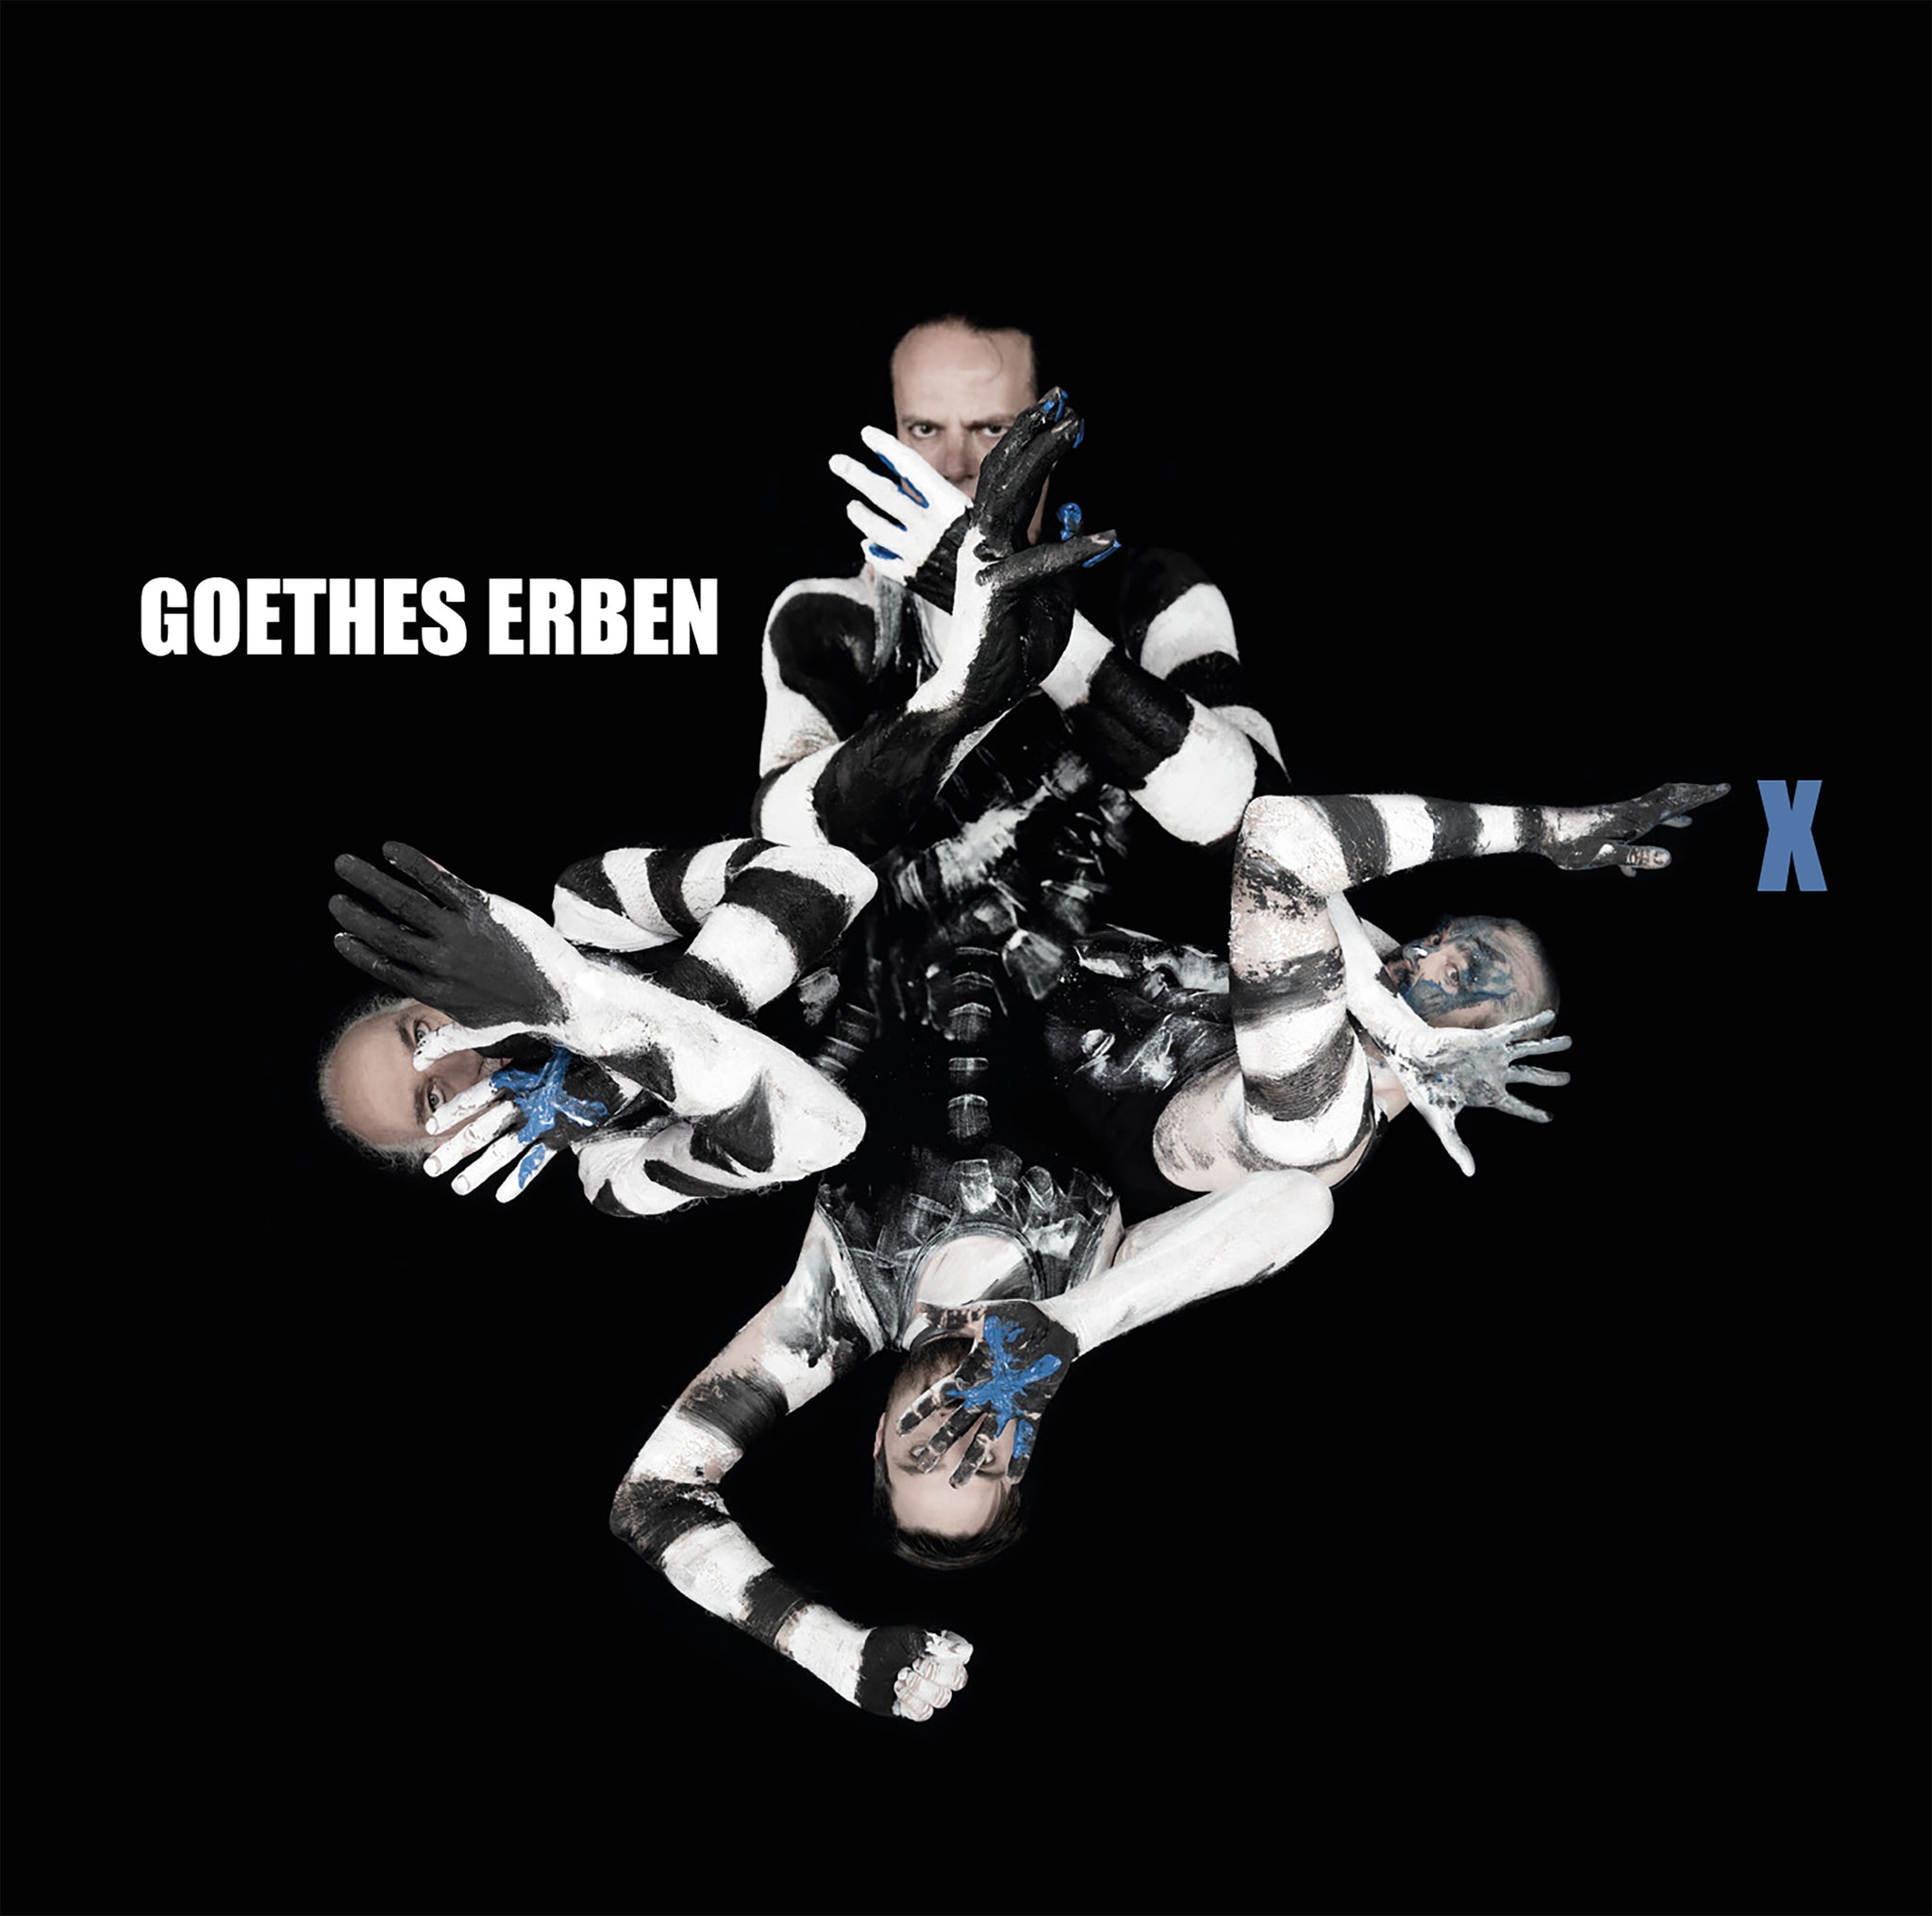 Goethes Erben - "X" (LP CD)